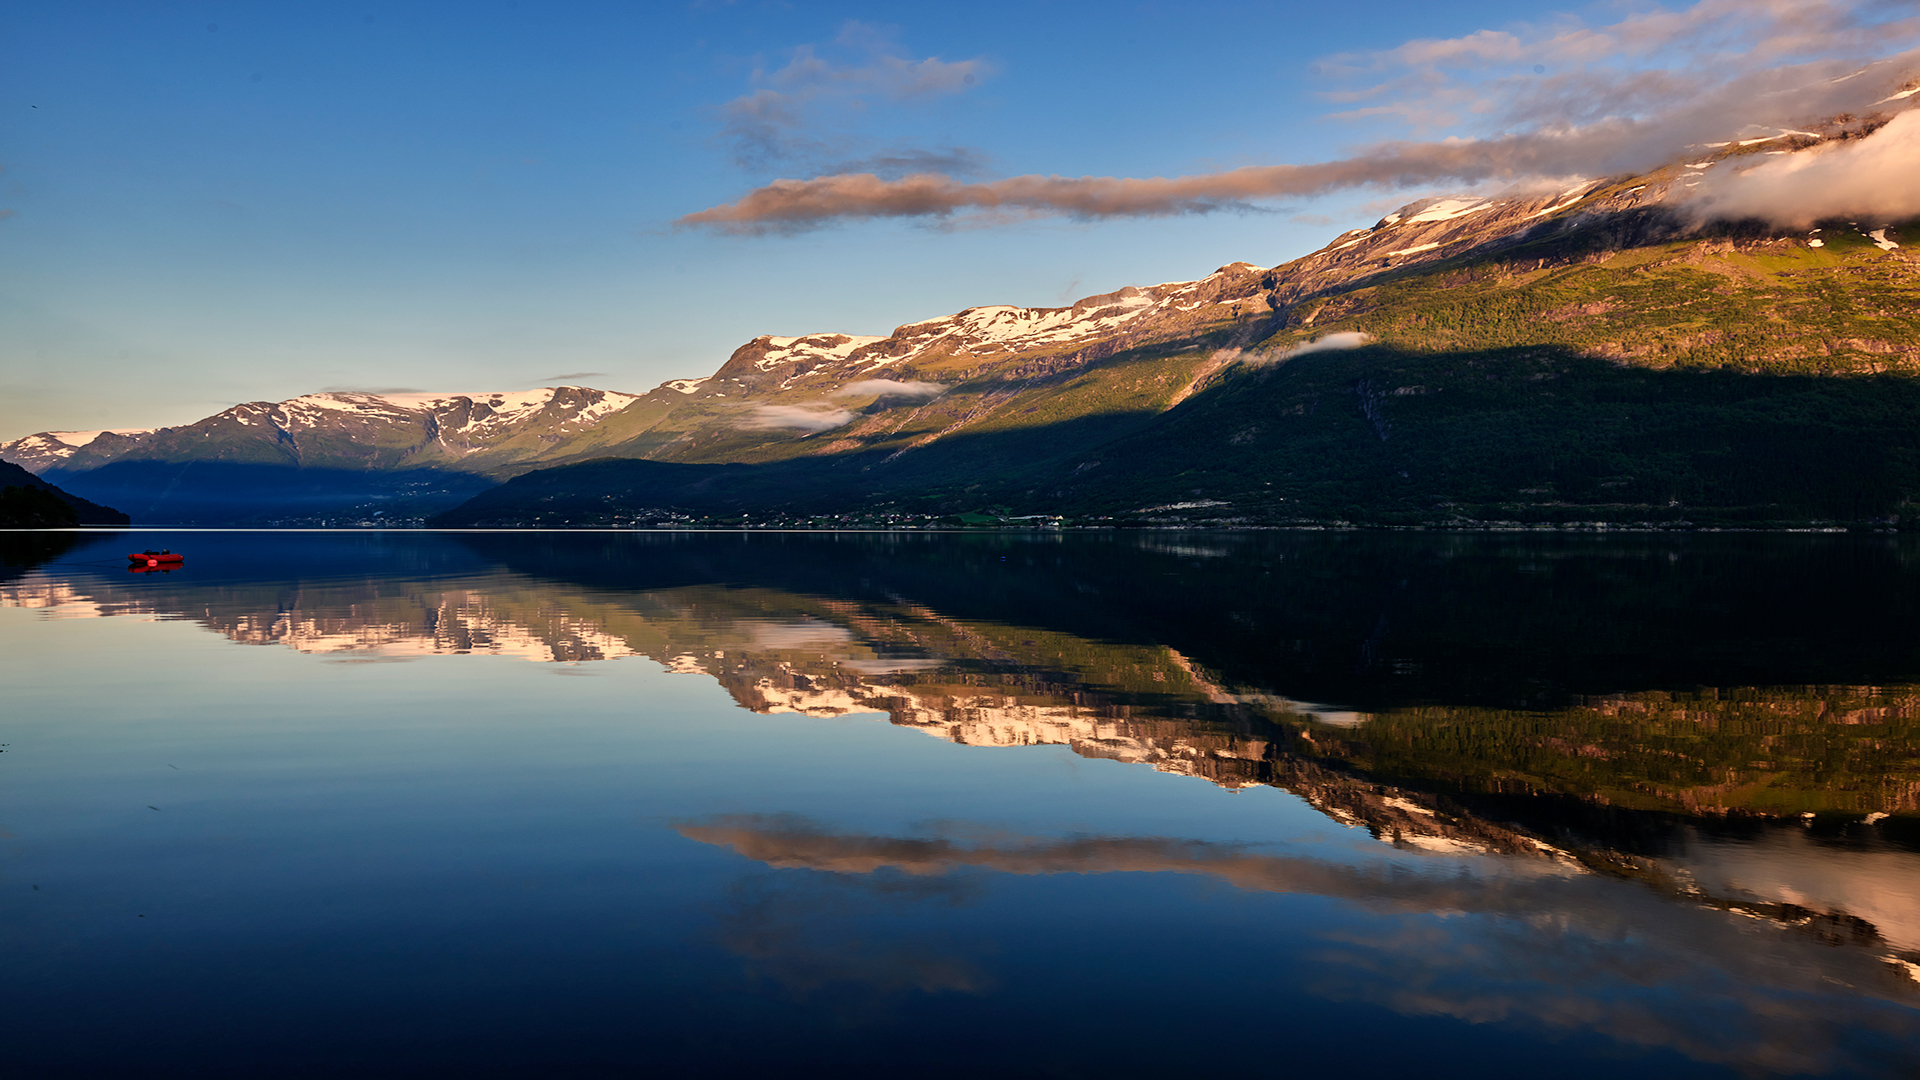 挪威自然山水风景唯美高清桌面壁纸 Tt98图片网